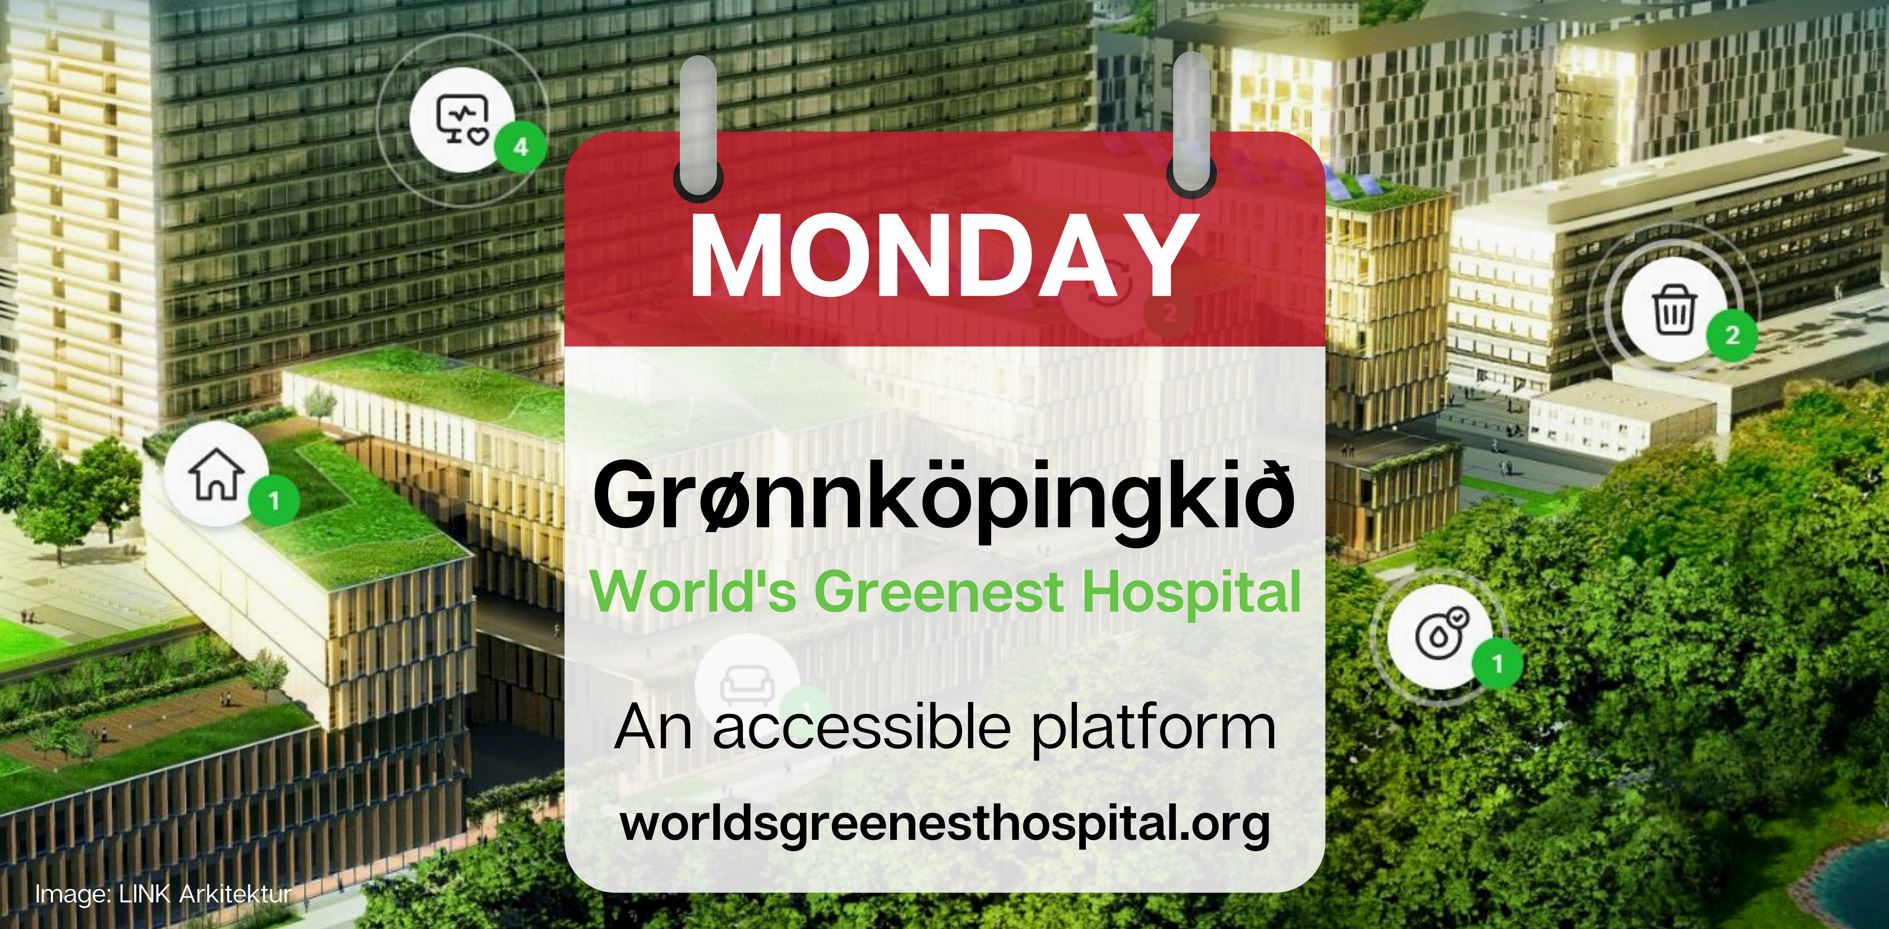 Grønnköpingkið Mondays: It Is All About Accessibility